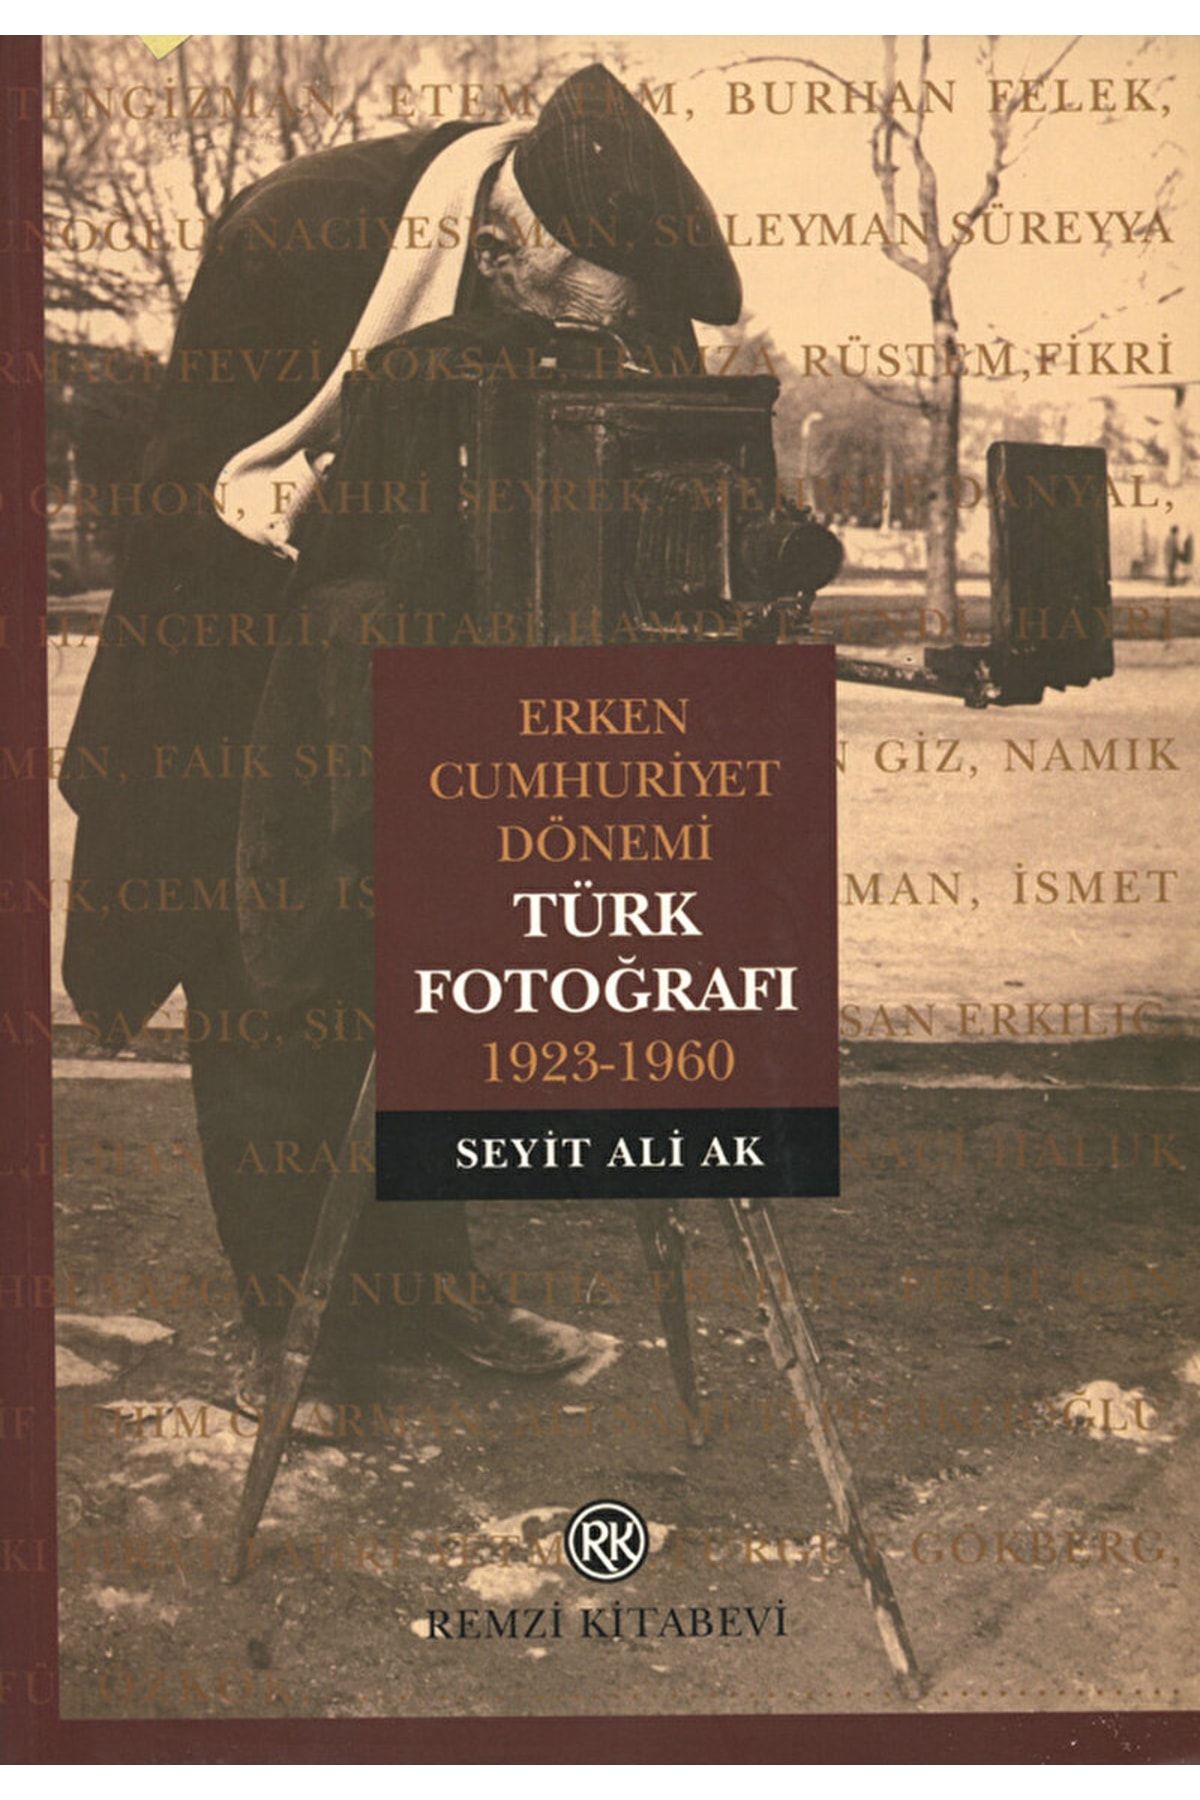 Remzi Kitabevi Erken Cumhuriyet Dönemi Türk Fotoğrafı 1923-1960 / Seyit Ali Ak / / 9789751407849